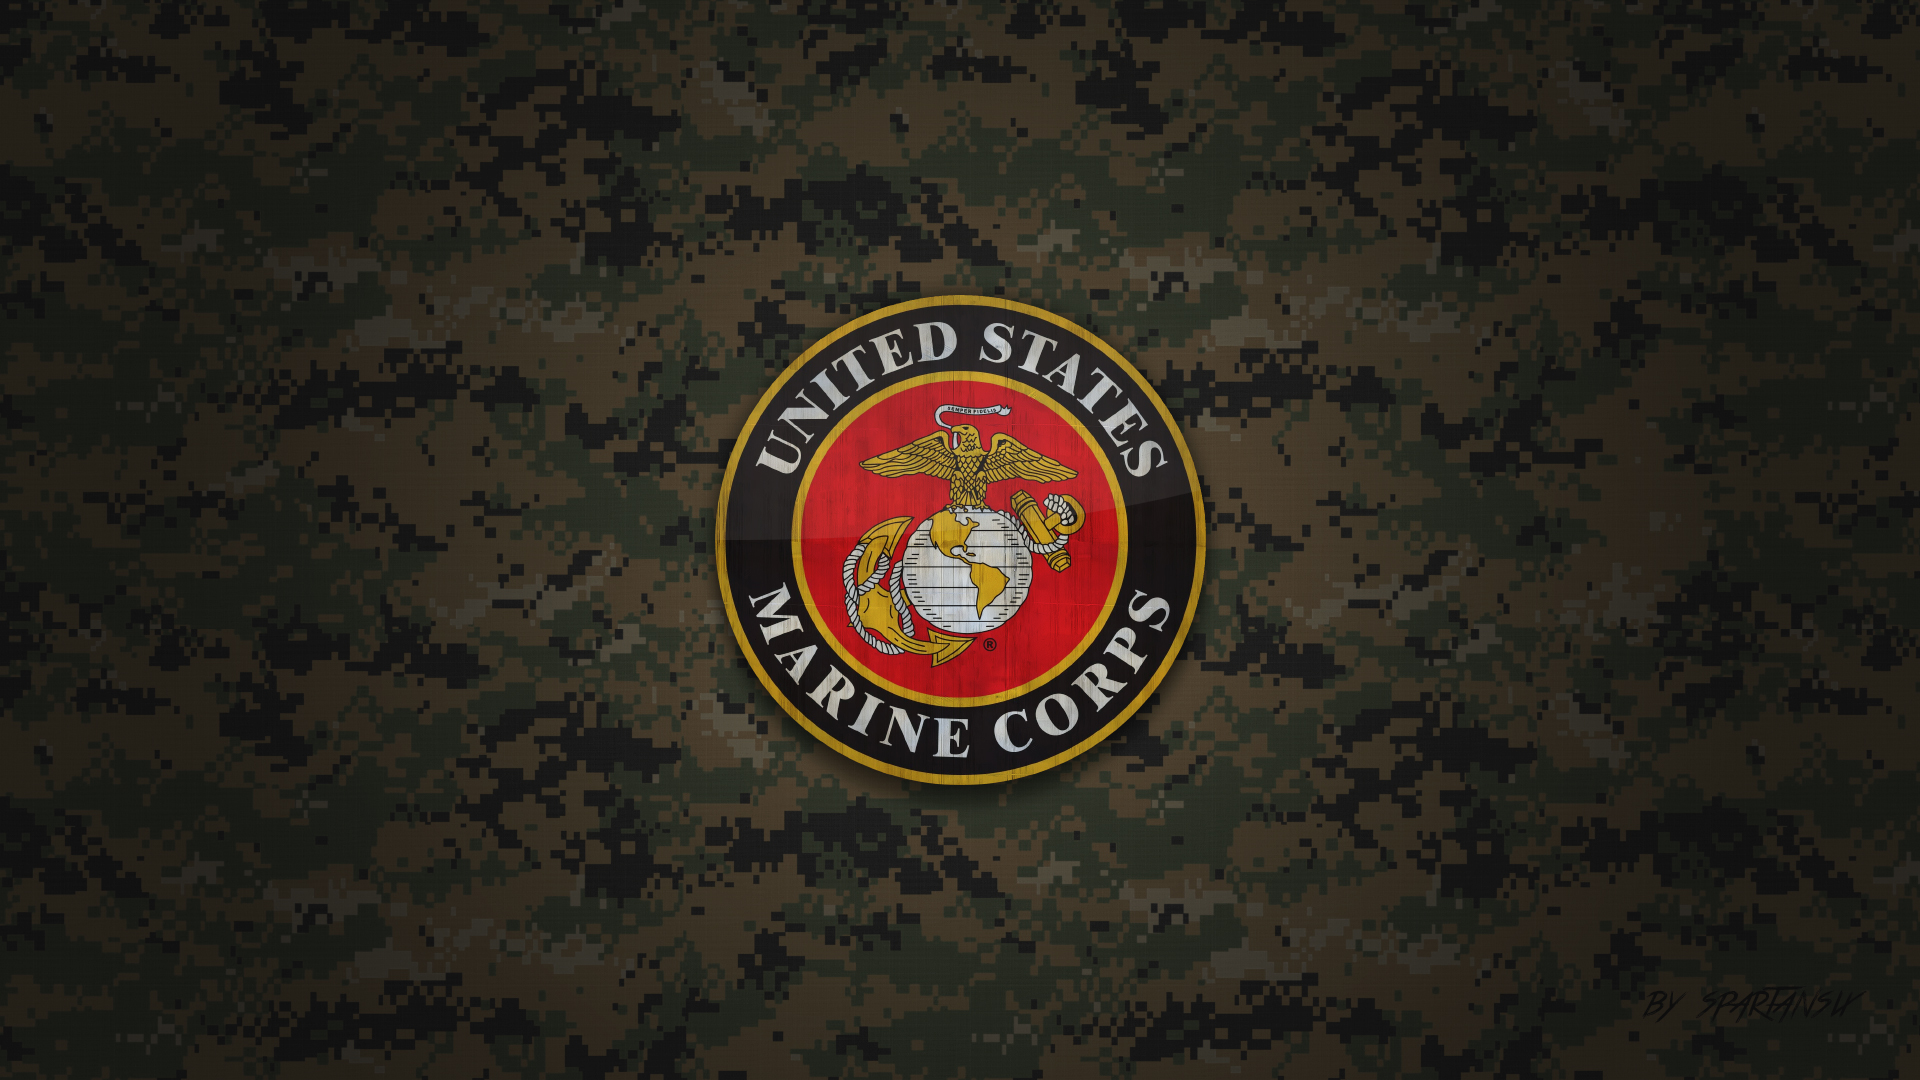 Bạn đã bao giờ muốn thử trải nghiệm cuộc sống trong đạo quân Marine Corps của nước Mỹ chưa? Hình ảnh sẽ mang đến cho bạn cảm giác thực sự về sự kiên cường, quyết tâm, và trách nhiệm của những chiến sĩ Marine Corps.